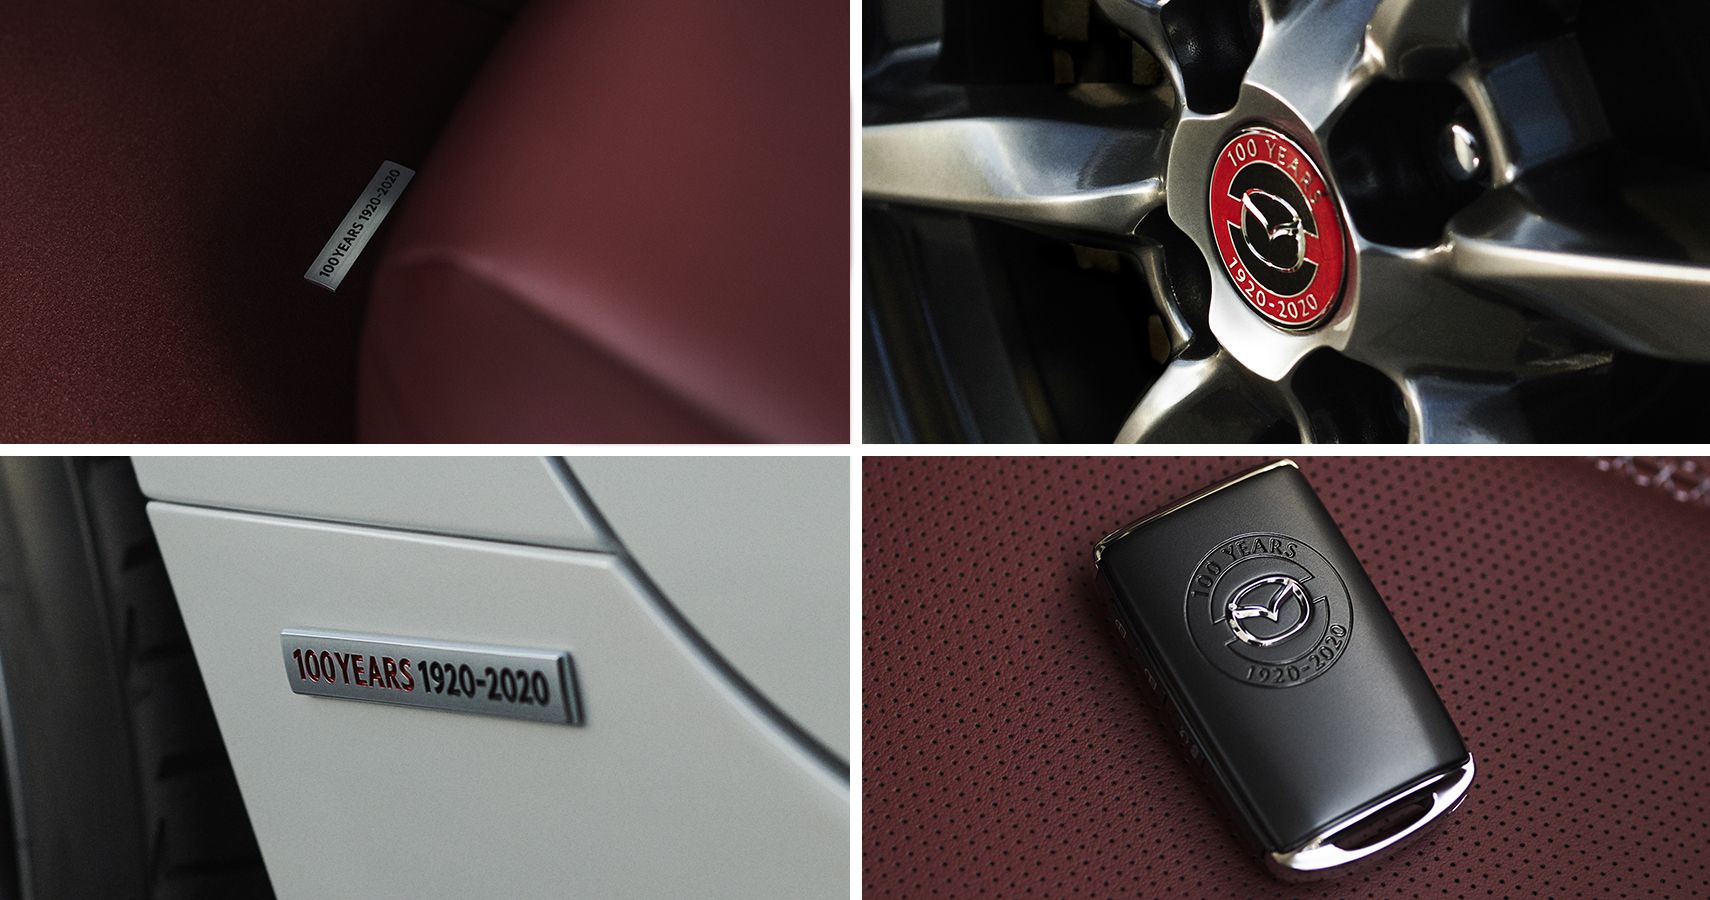 100th Anniversary Special Edition Mazda MX-5 Miata details